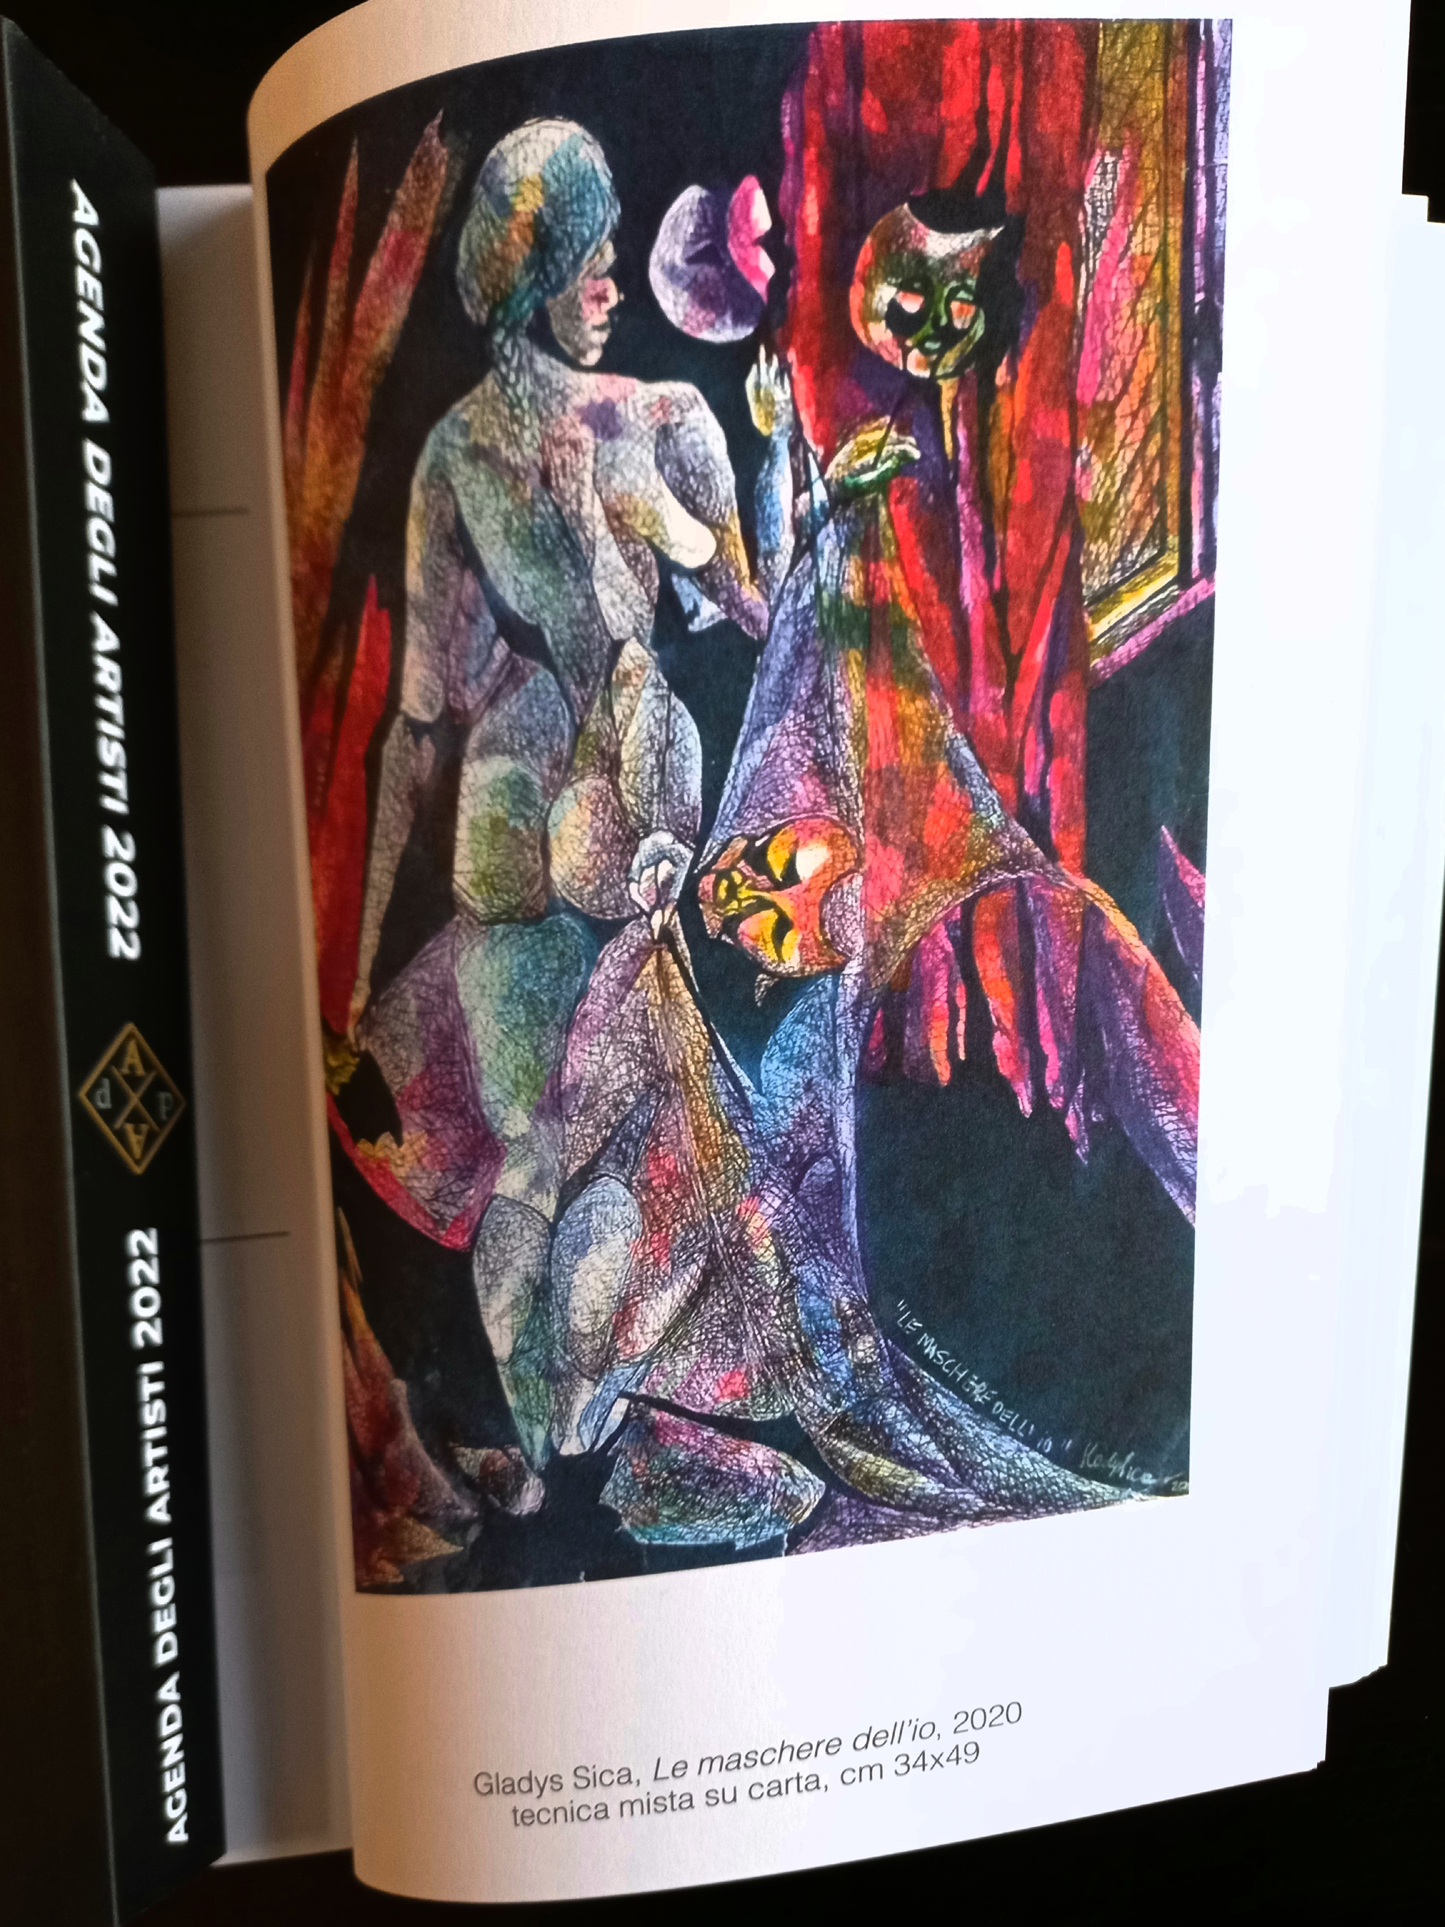 2022 - Agenda degli Artisti, Storica Libreria Bocca, Milano, opera di Gladys Sica 'Le maschere dell'io' tecnica mista su carta, 34x49.